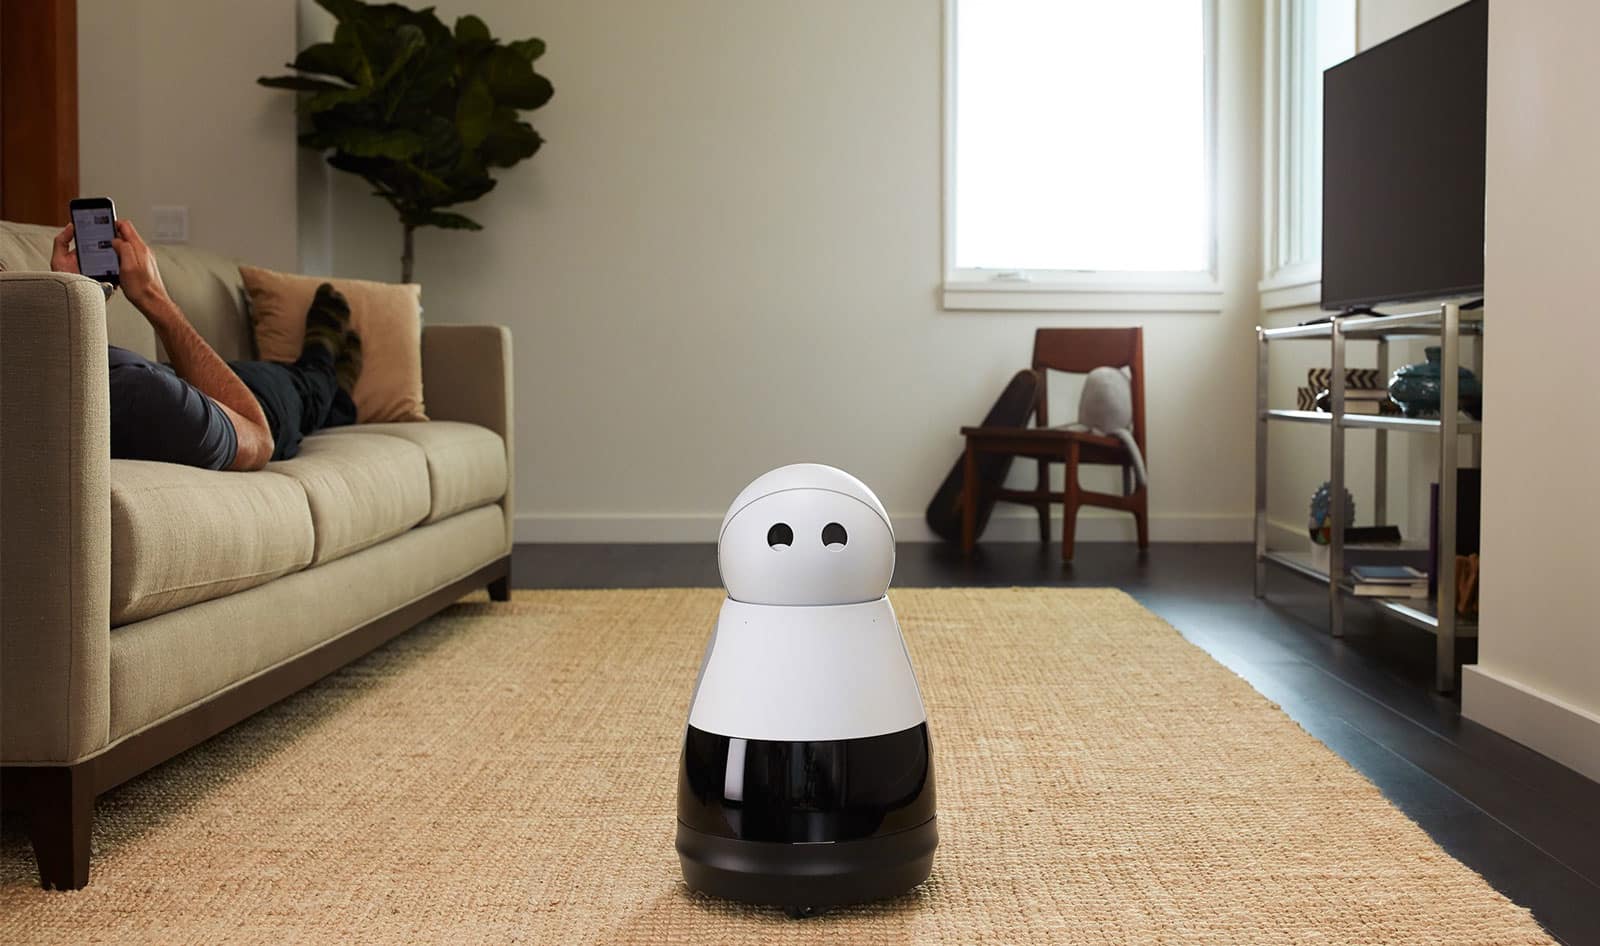 Os robôs ganharão espaço na sociedade. Foto: Mayfield Robotics.